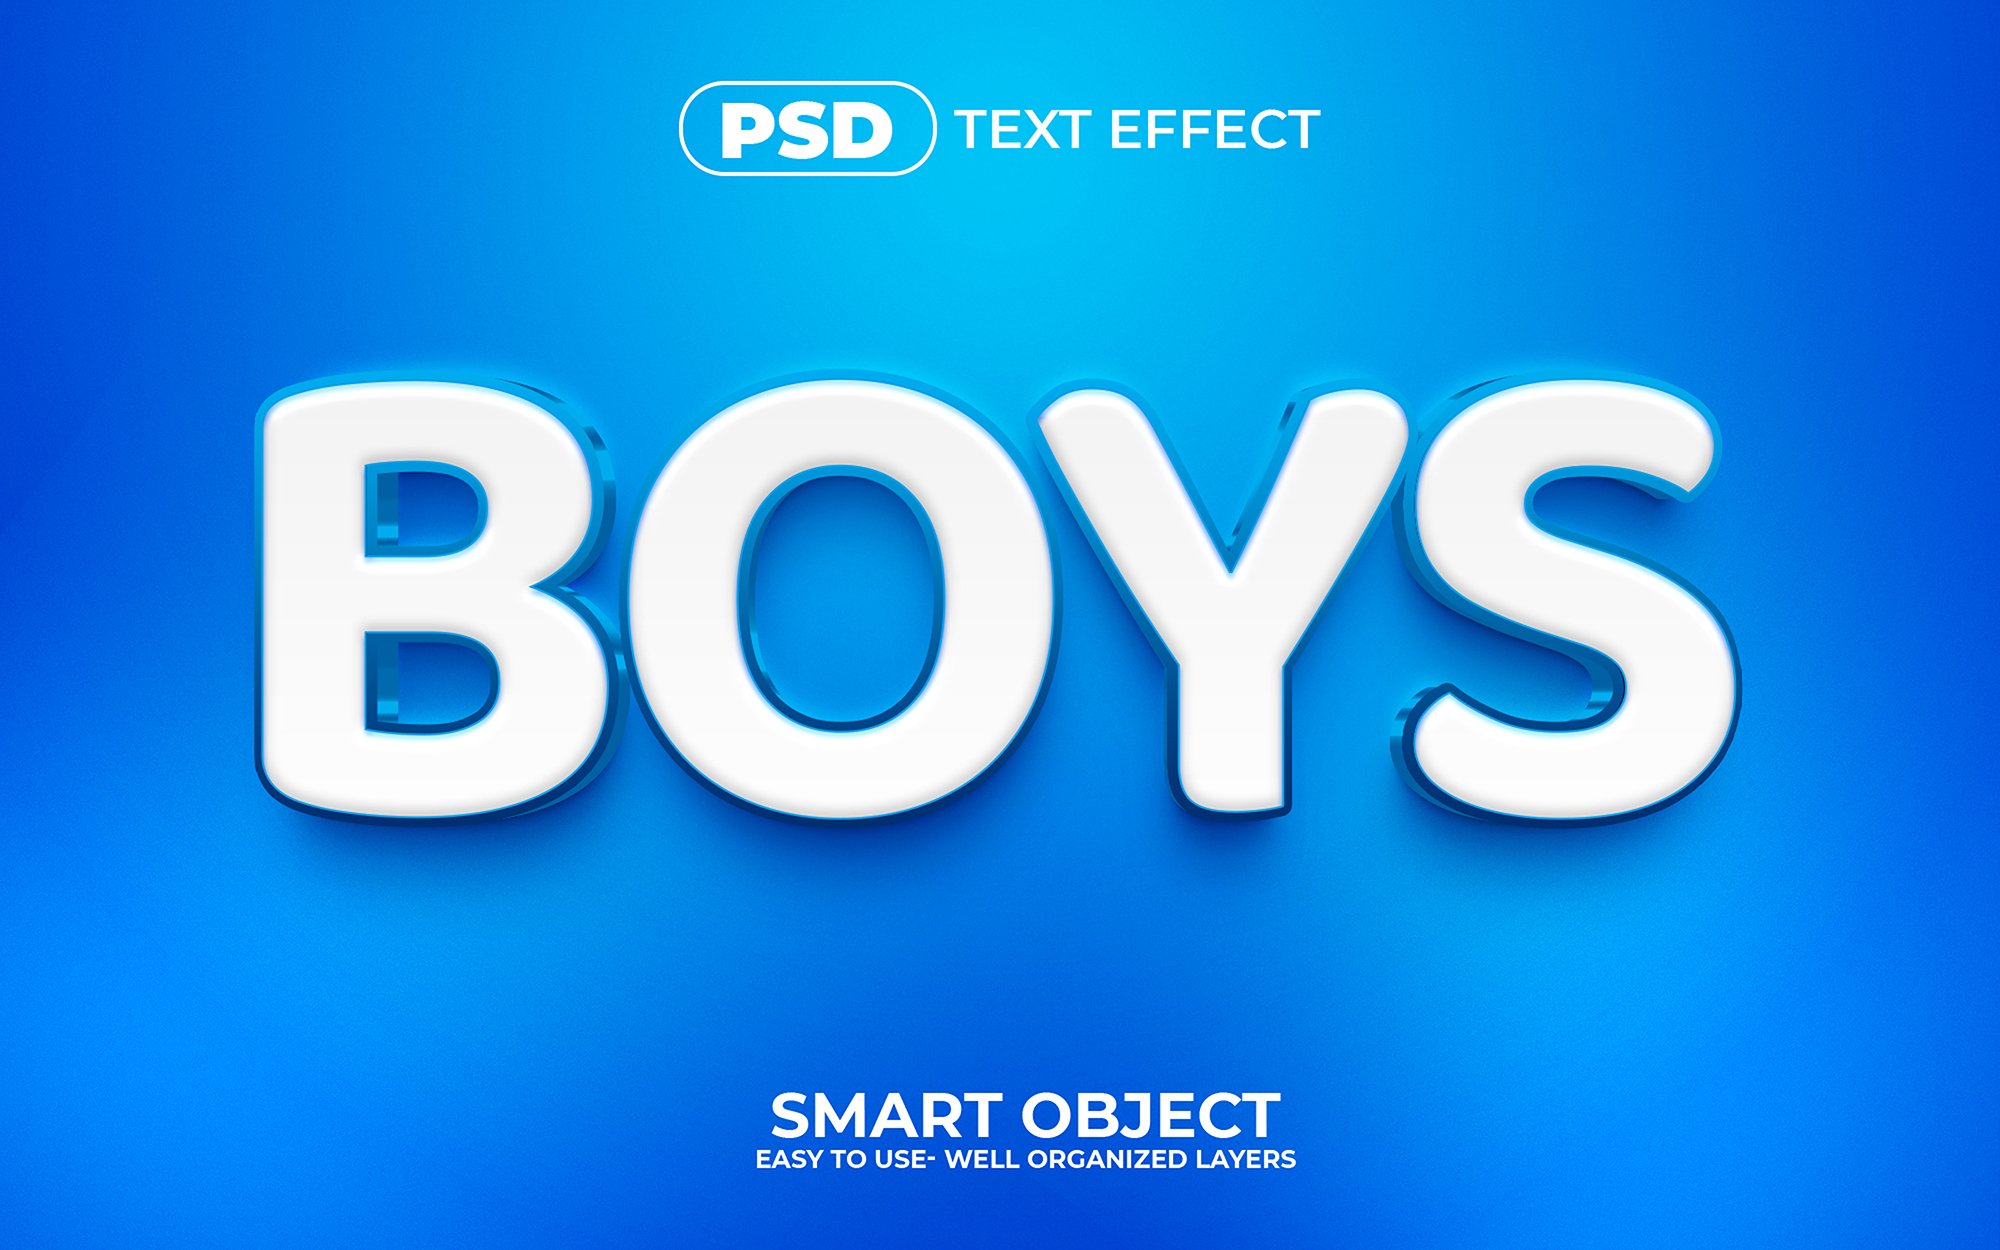 Boys 3D Editable psd Text Effectcover image.